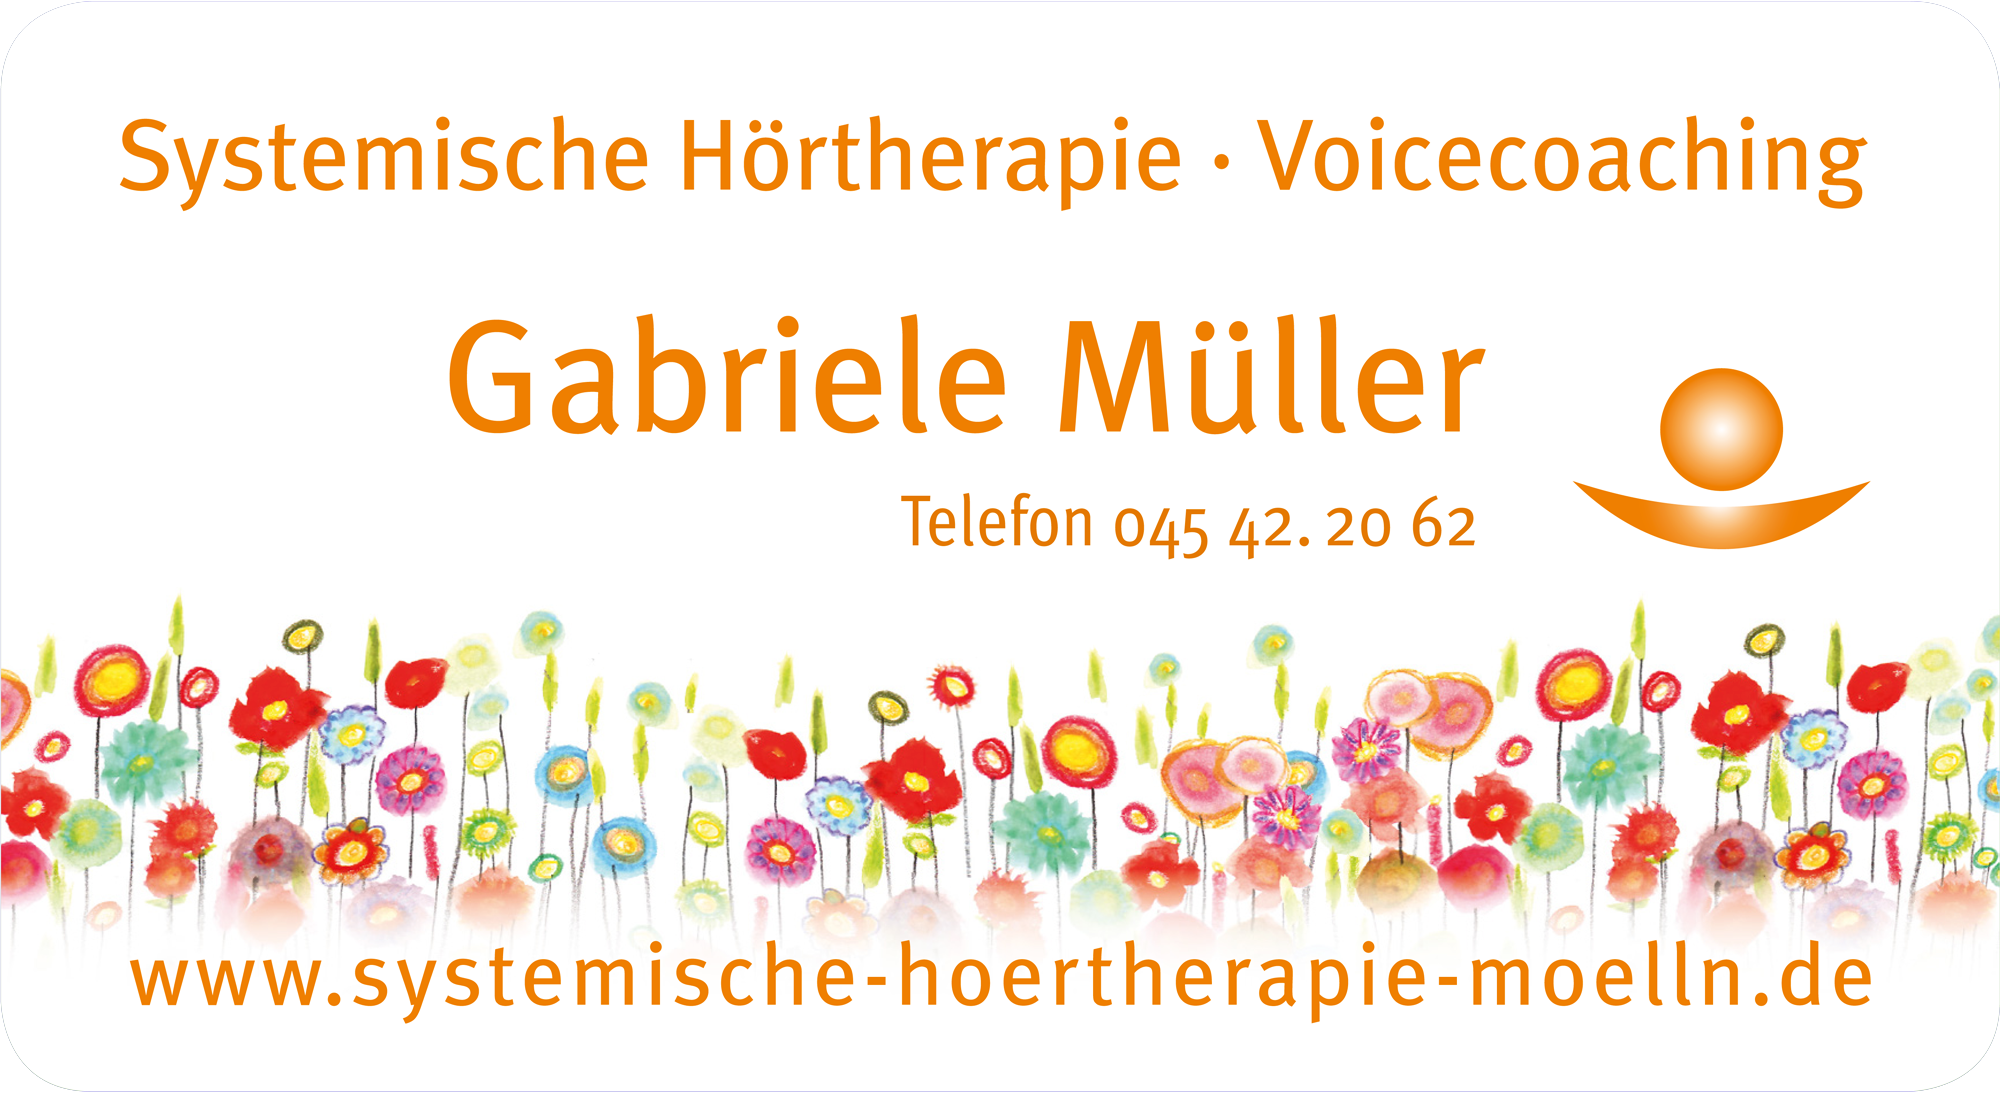 Gabriele Müller - Metamorphische Methode - Systemische Hörtherapie - Voicecoaching